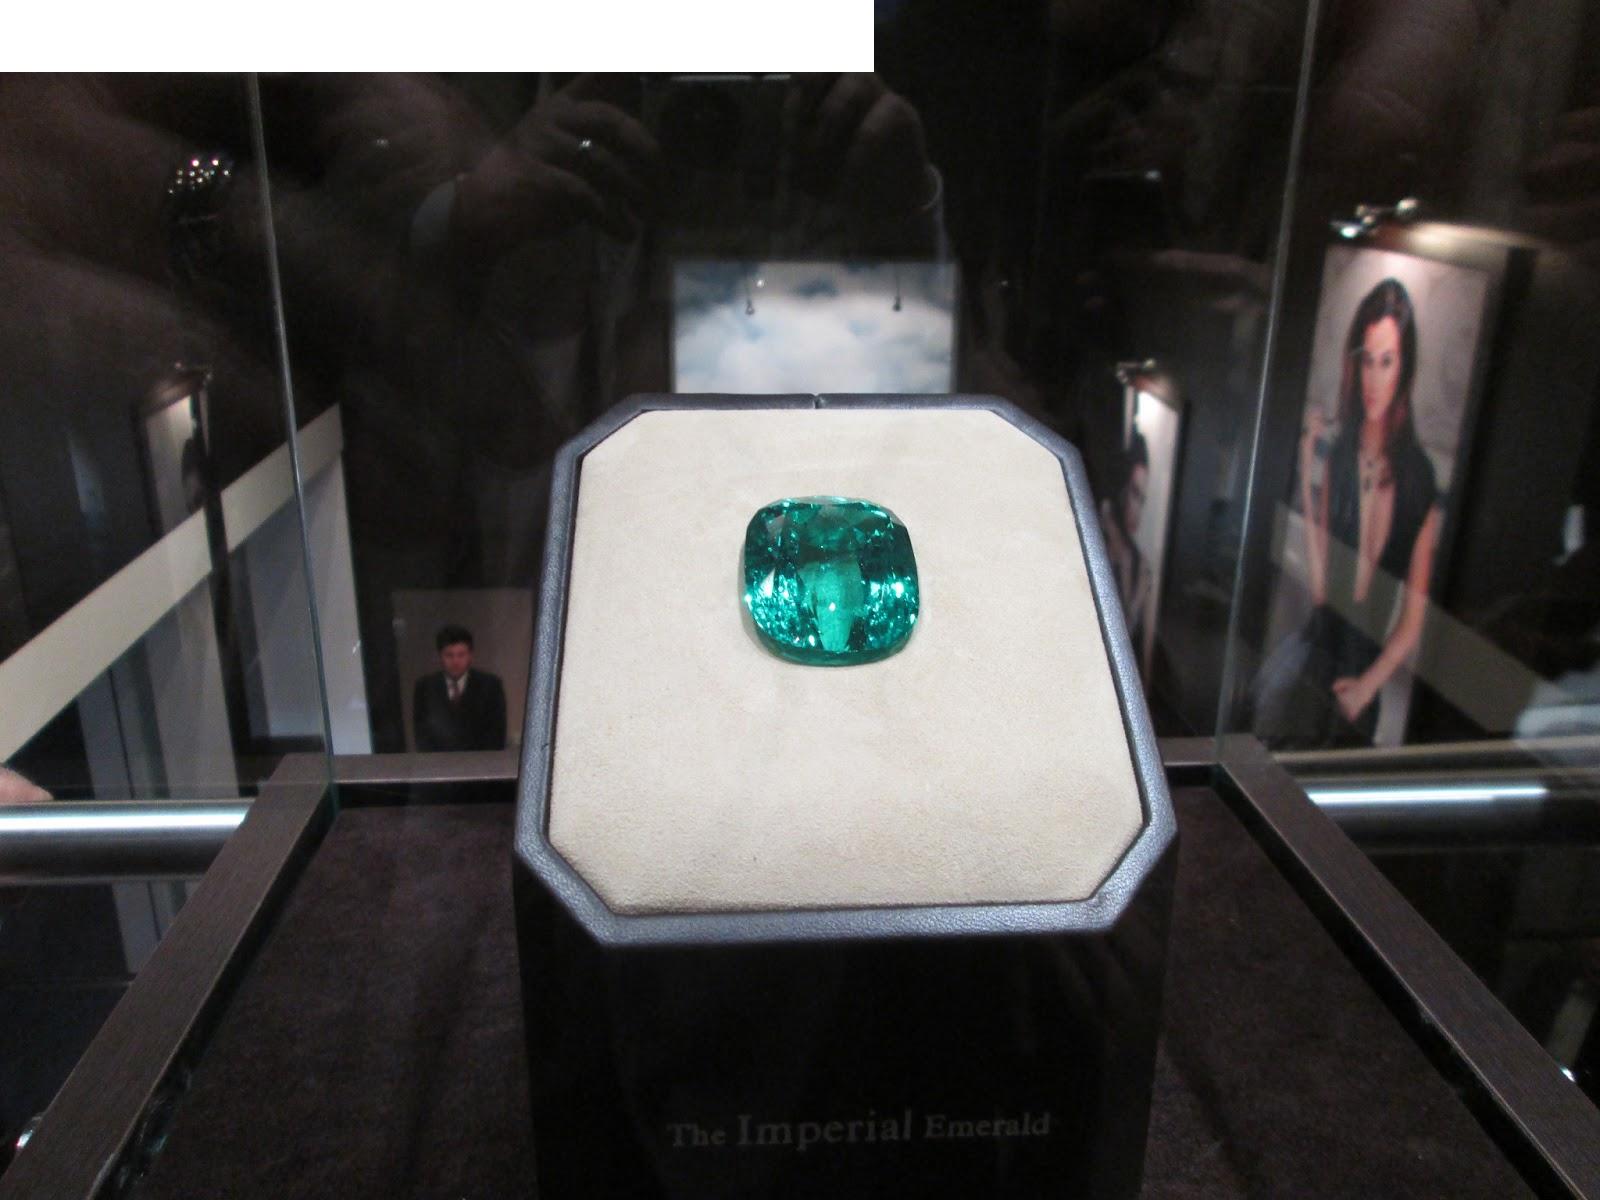 "Imperial Emerald" in 206 karaat